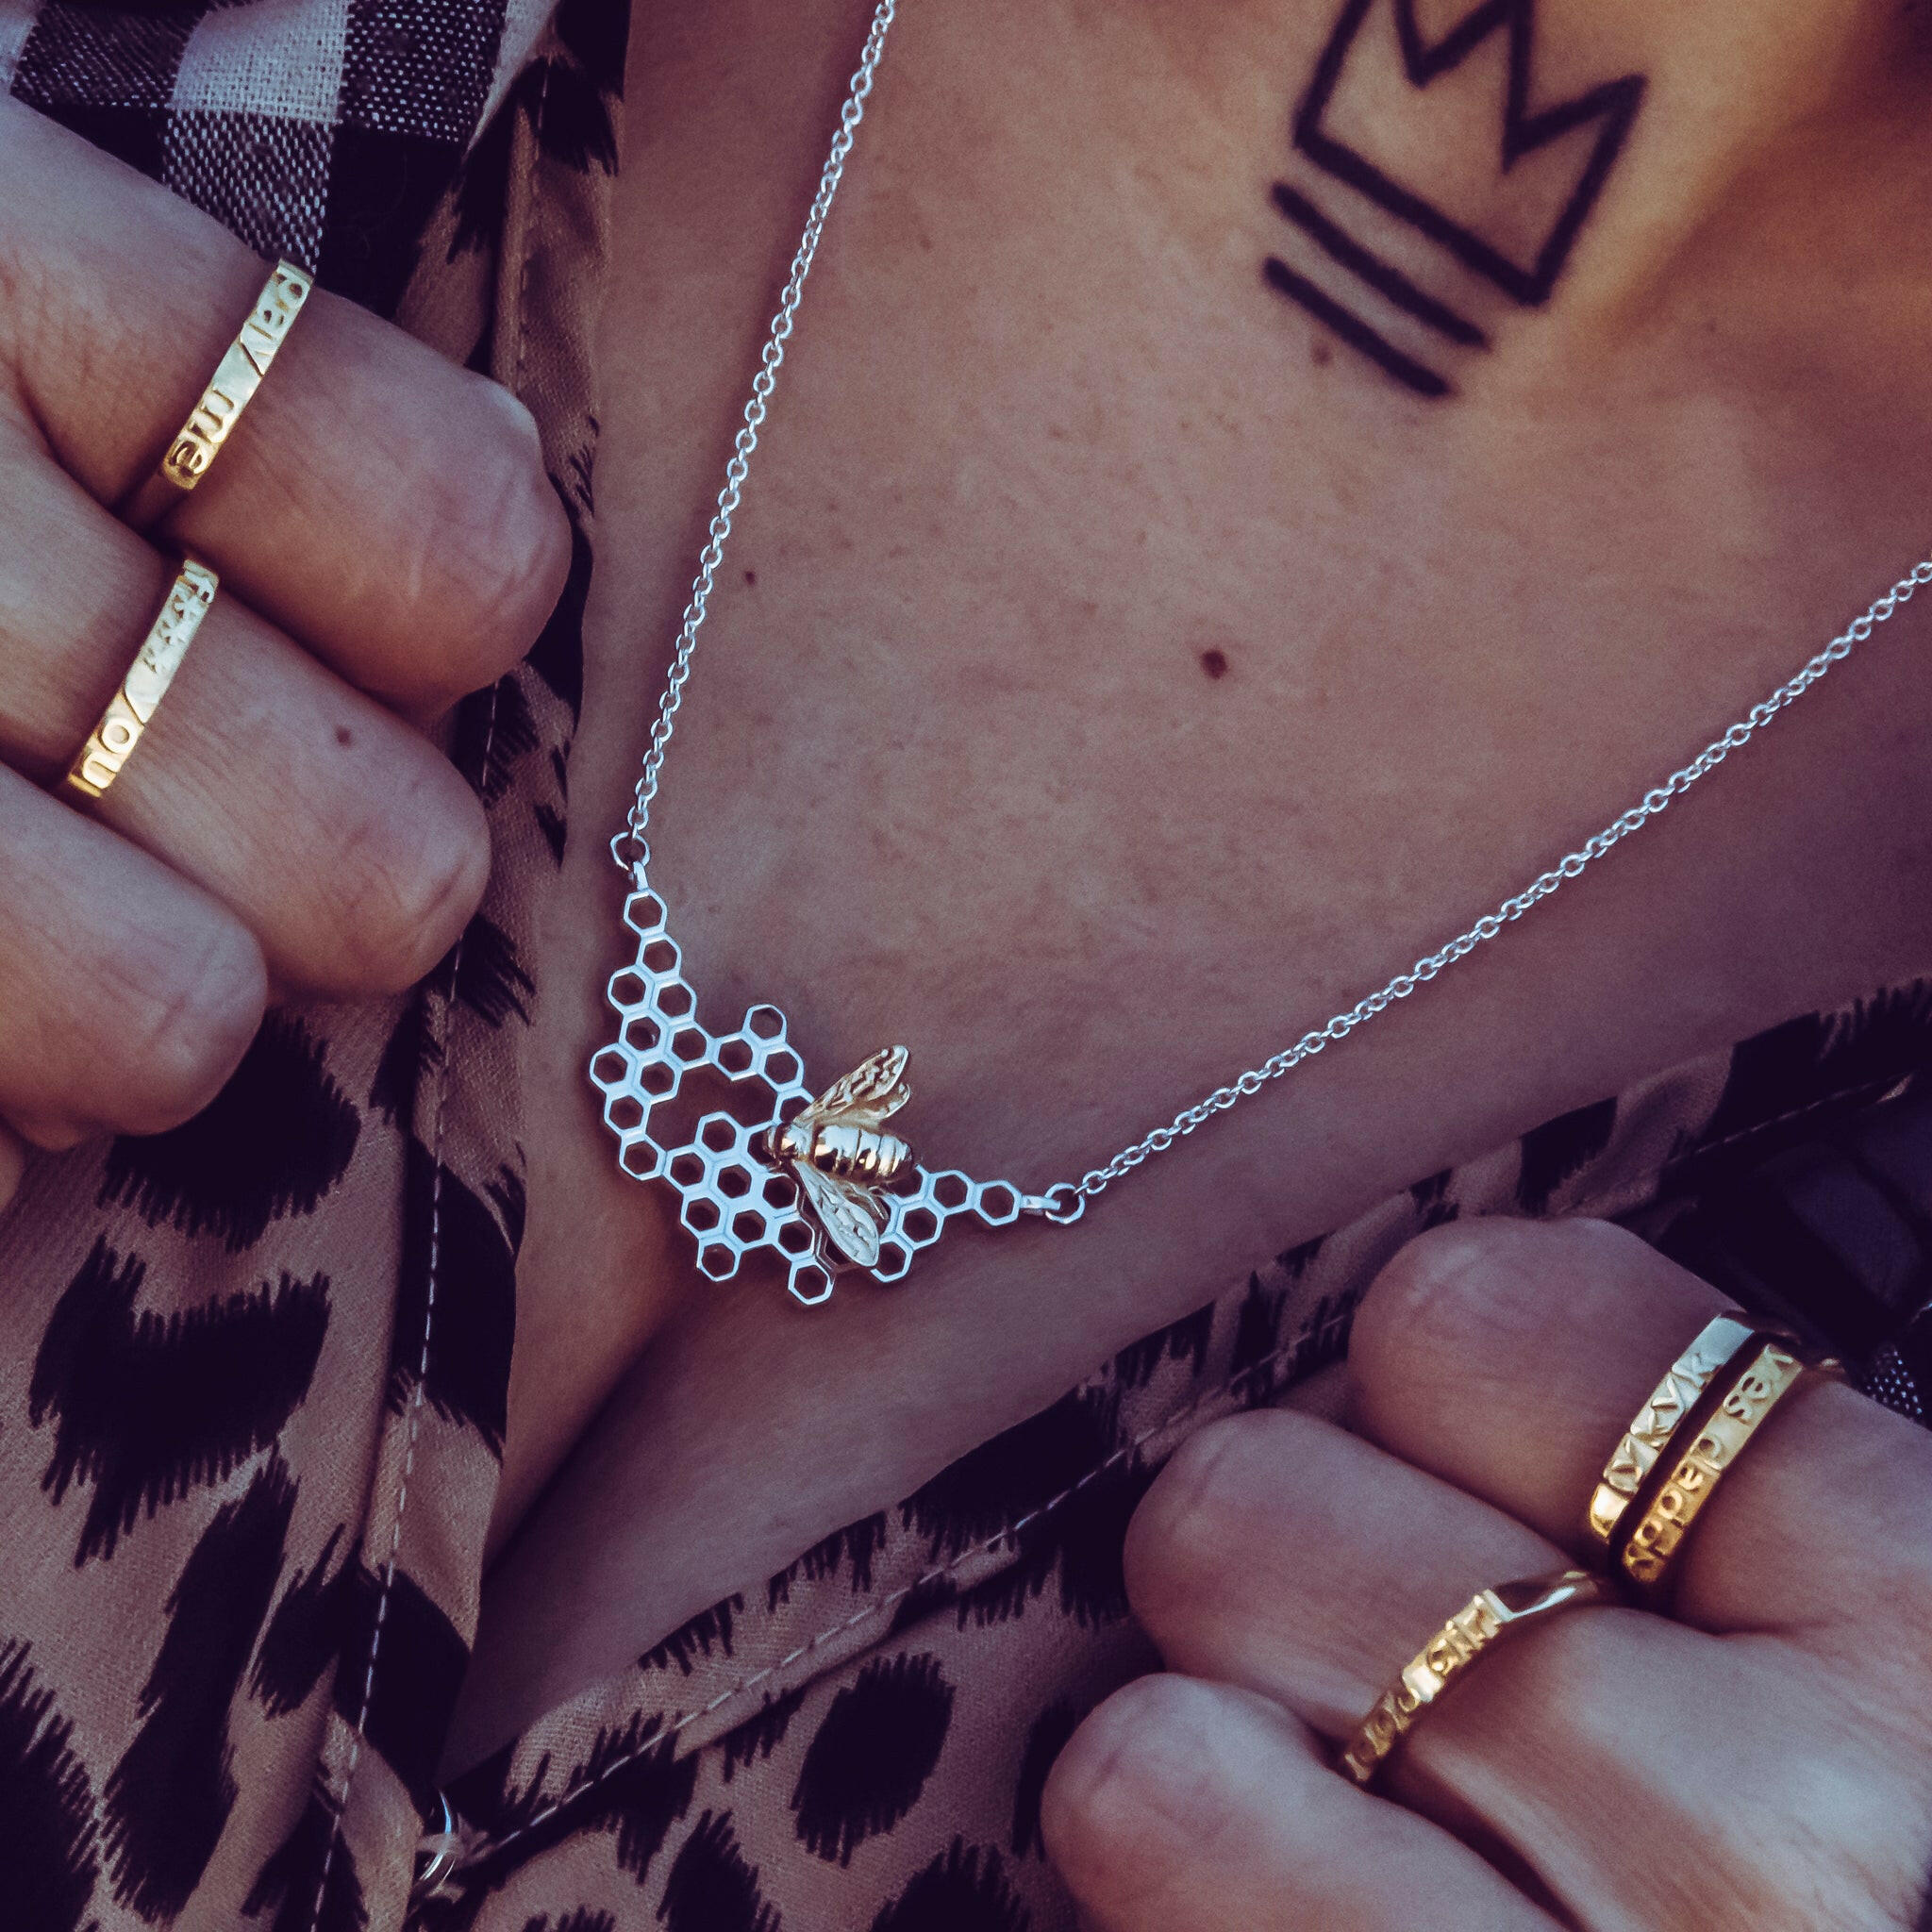 Honey Comb Necklace - Ilah Cibis Jewelry-Necklaces